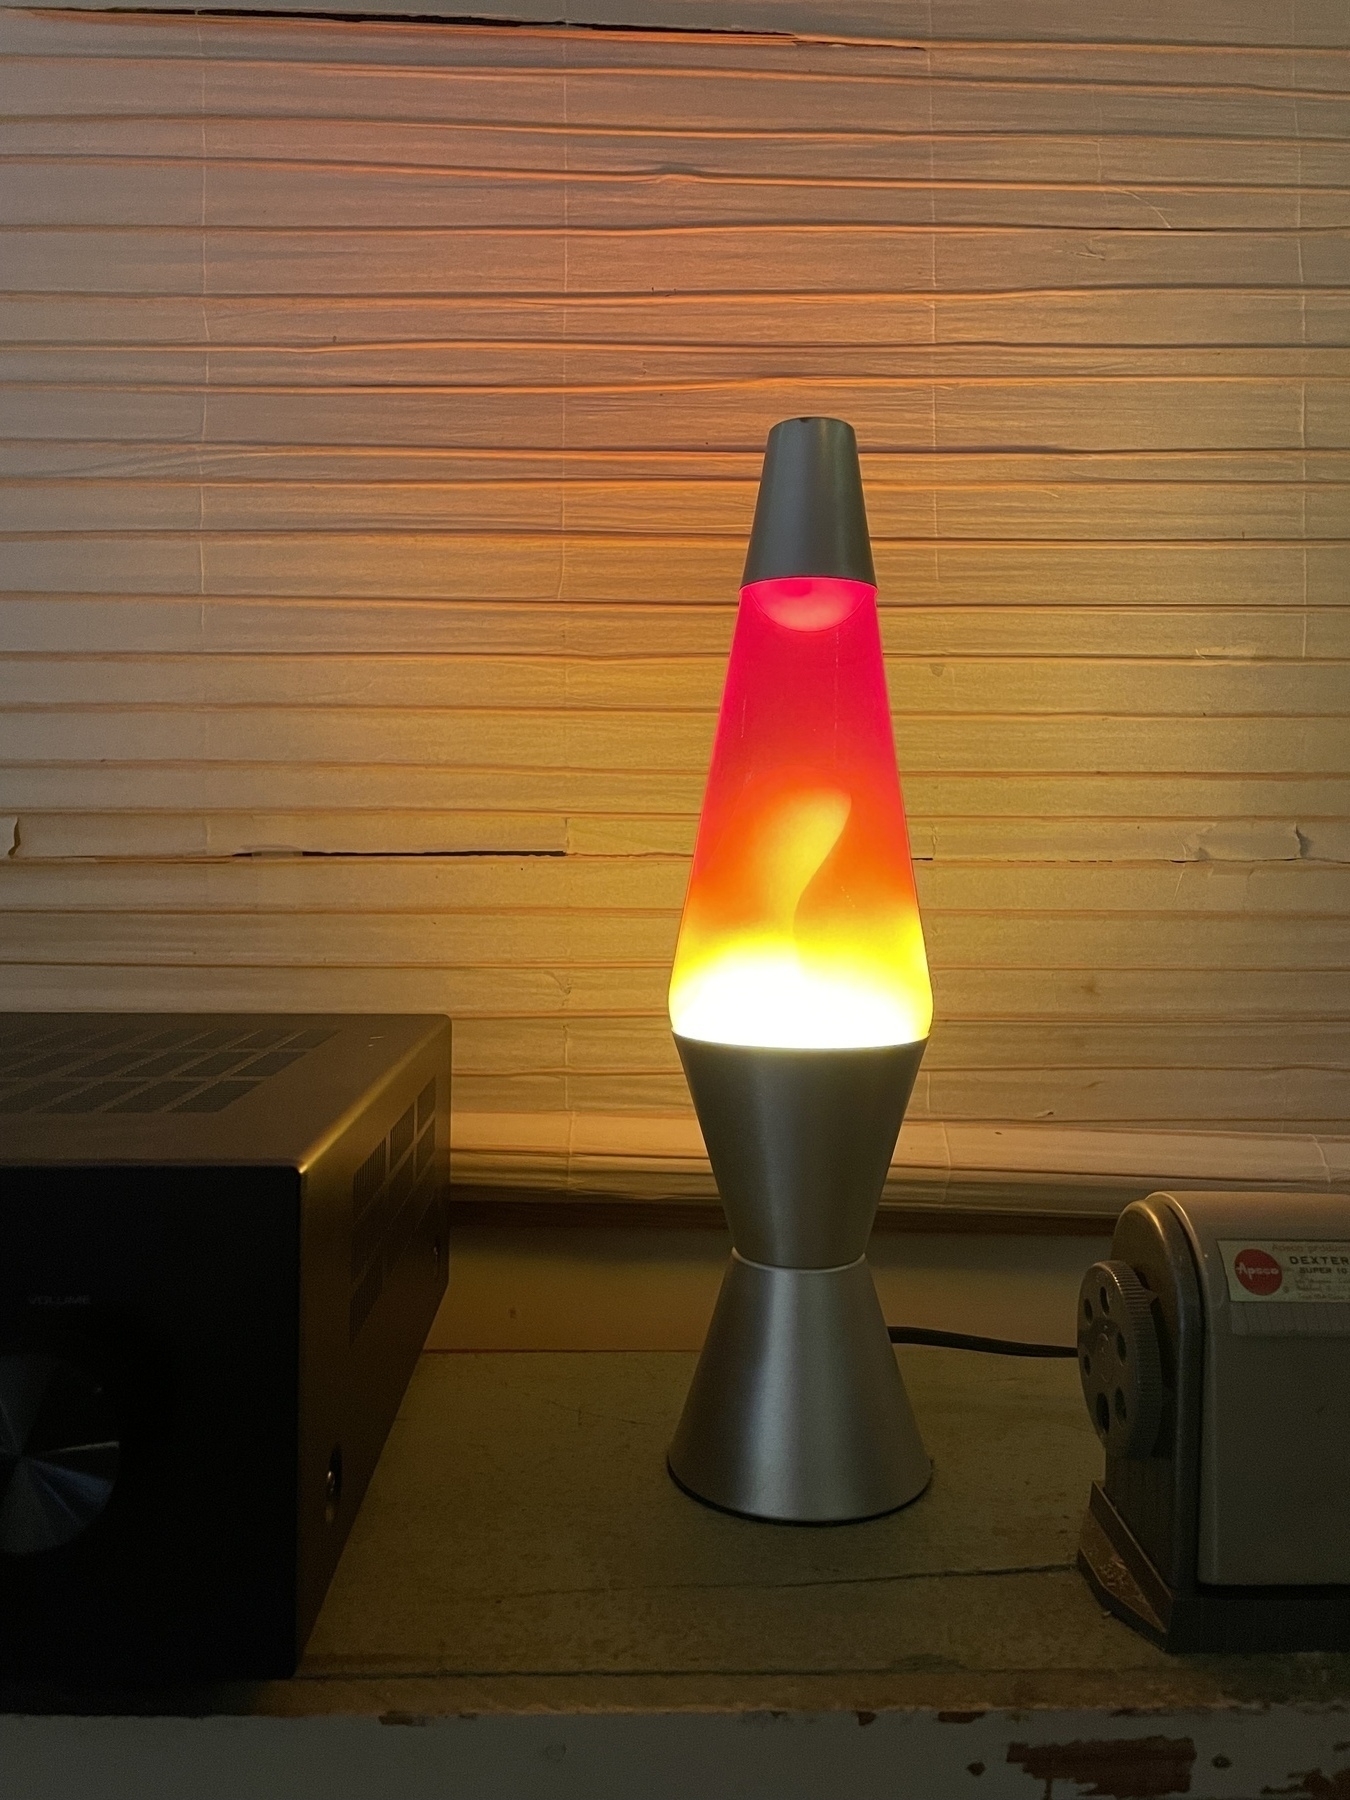 A red lava lamp an a shelf between an amplifier and a pencil sharpener